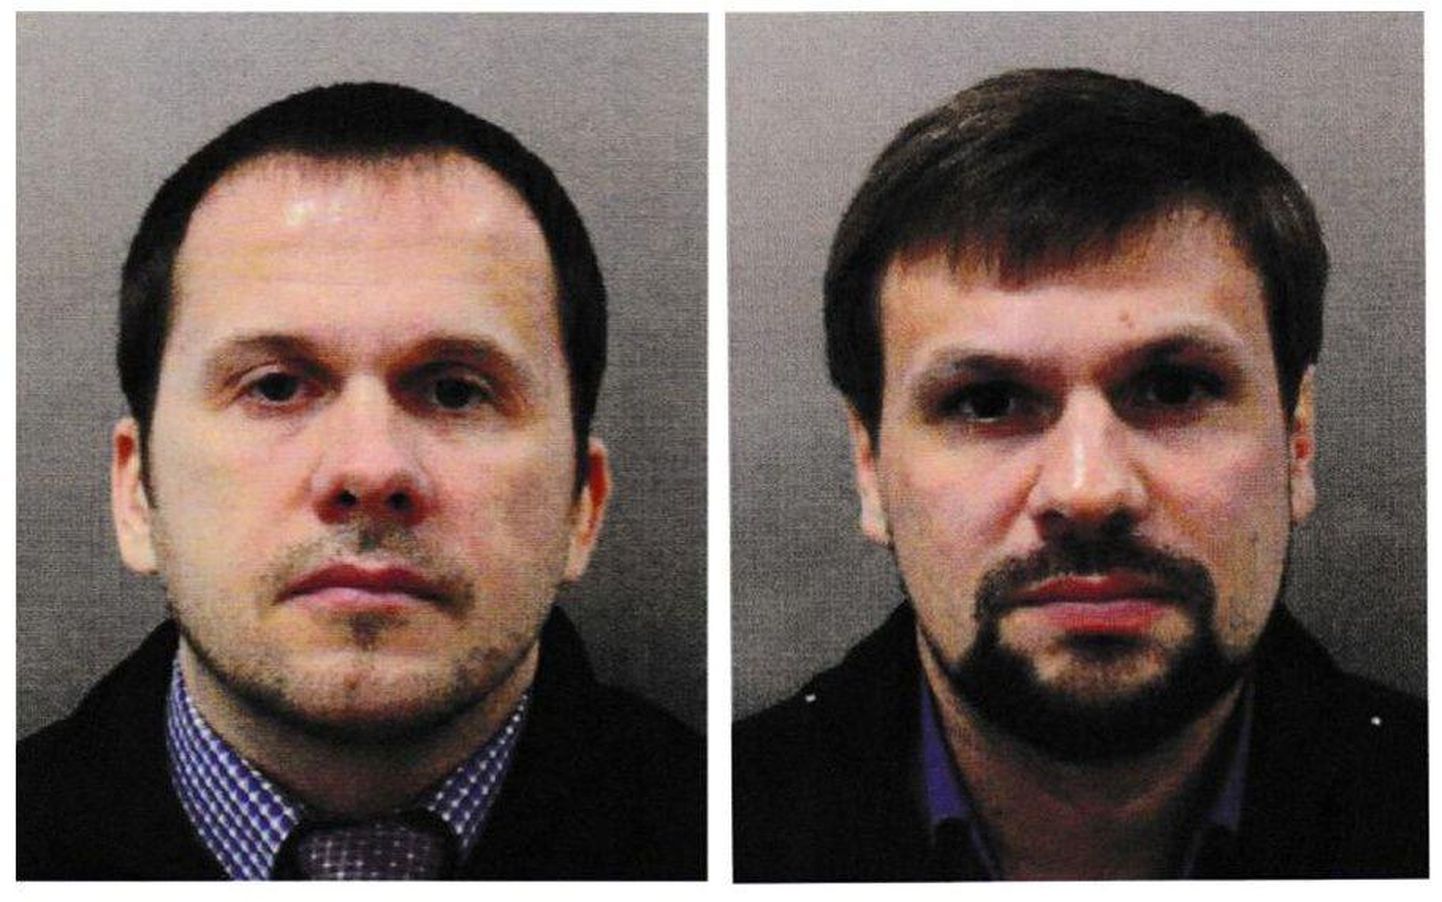 Närvimürgirünnakus süüdistatavad GRU töötajad Aleksandr Petrov (vasakul) ja Ruslan Boširov.